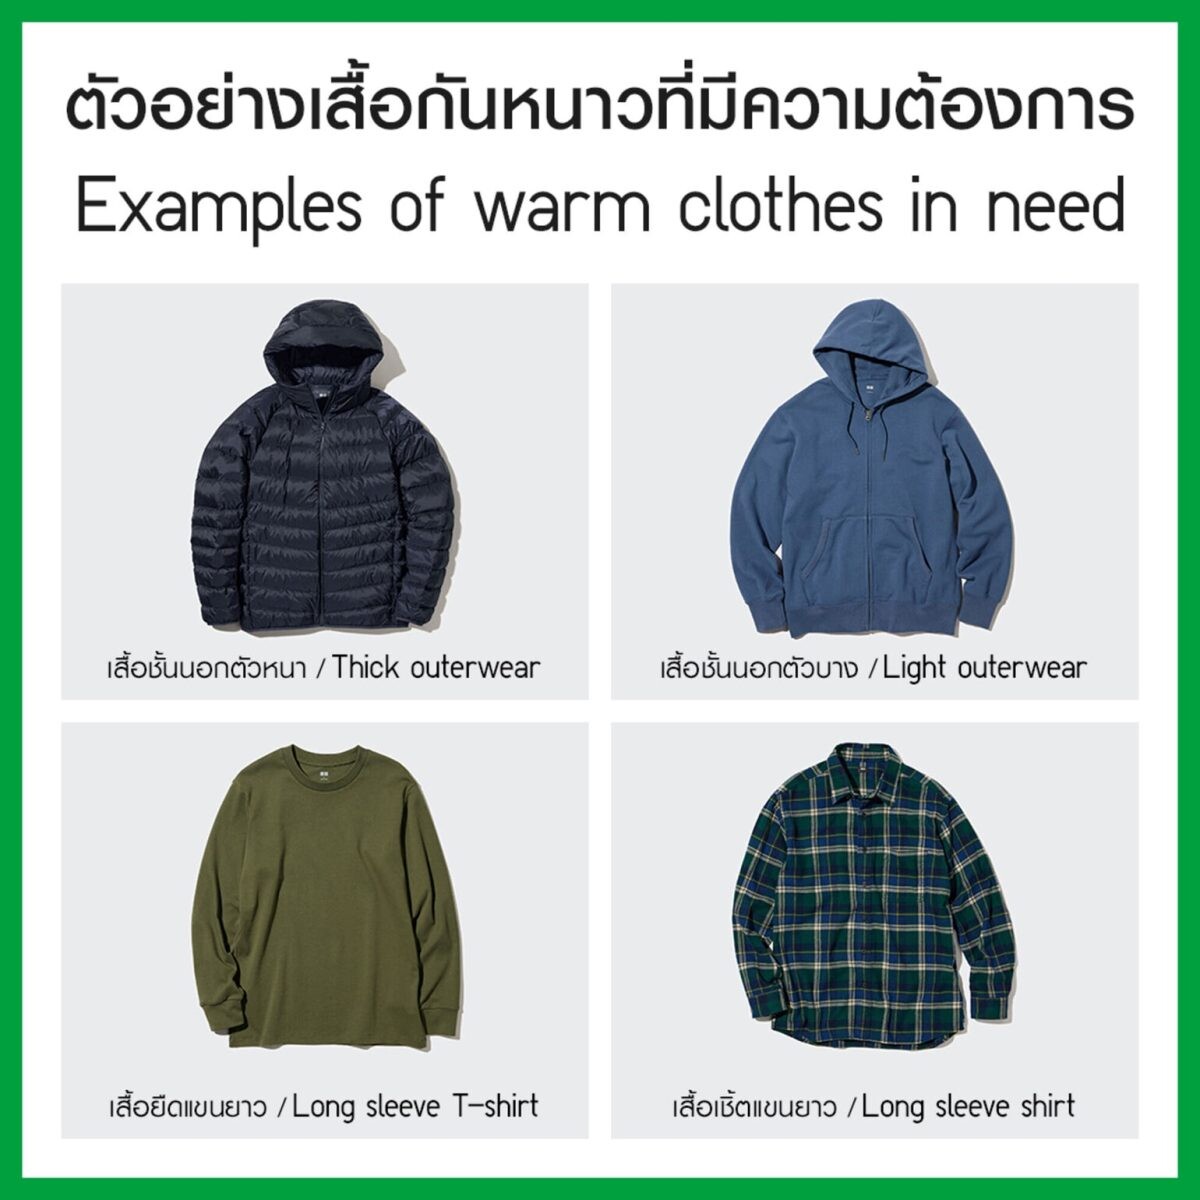 "ยูนิโคล่ เชิญชวนร่วมบริจาคเสื้อกันหนาว 50,000 ตัว ภายในปี 2566 เพื่อช่วยชีวิตผู้ประสบภัยหนาวในไทย ภายในแคมเปญ RE.UNIQLO"